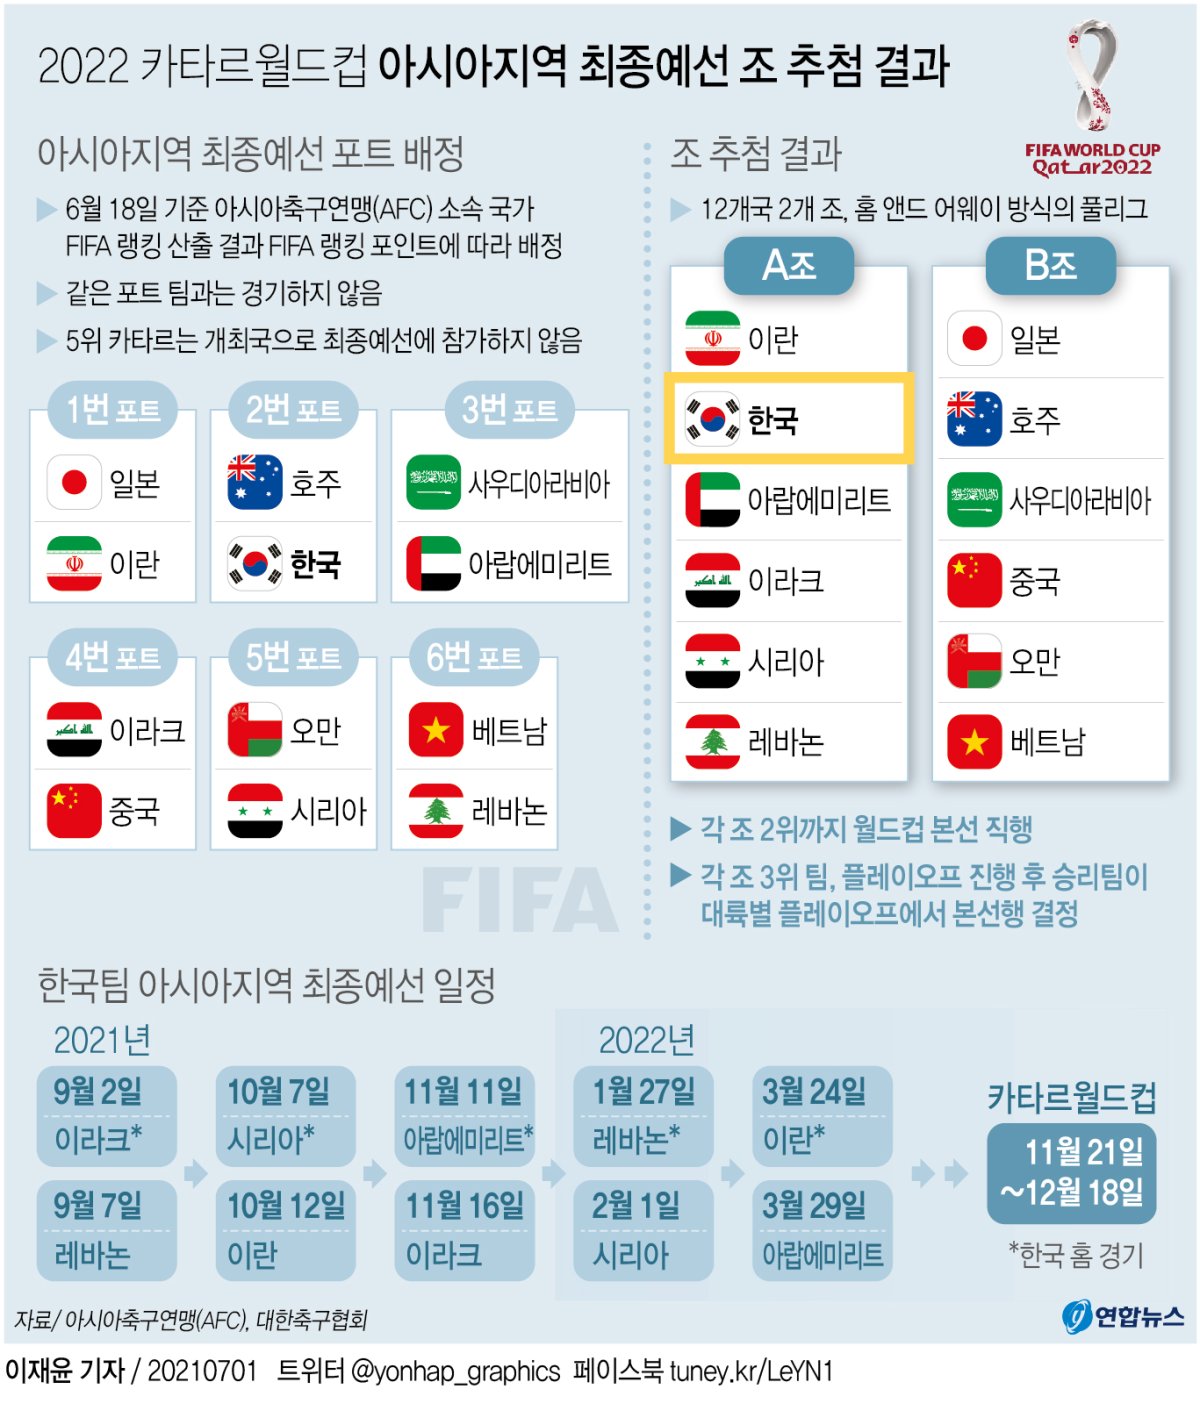 최종 예선 일정 월드컵 11월 카타르